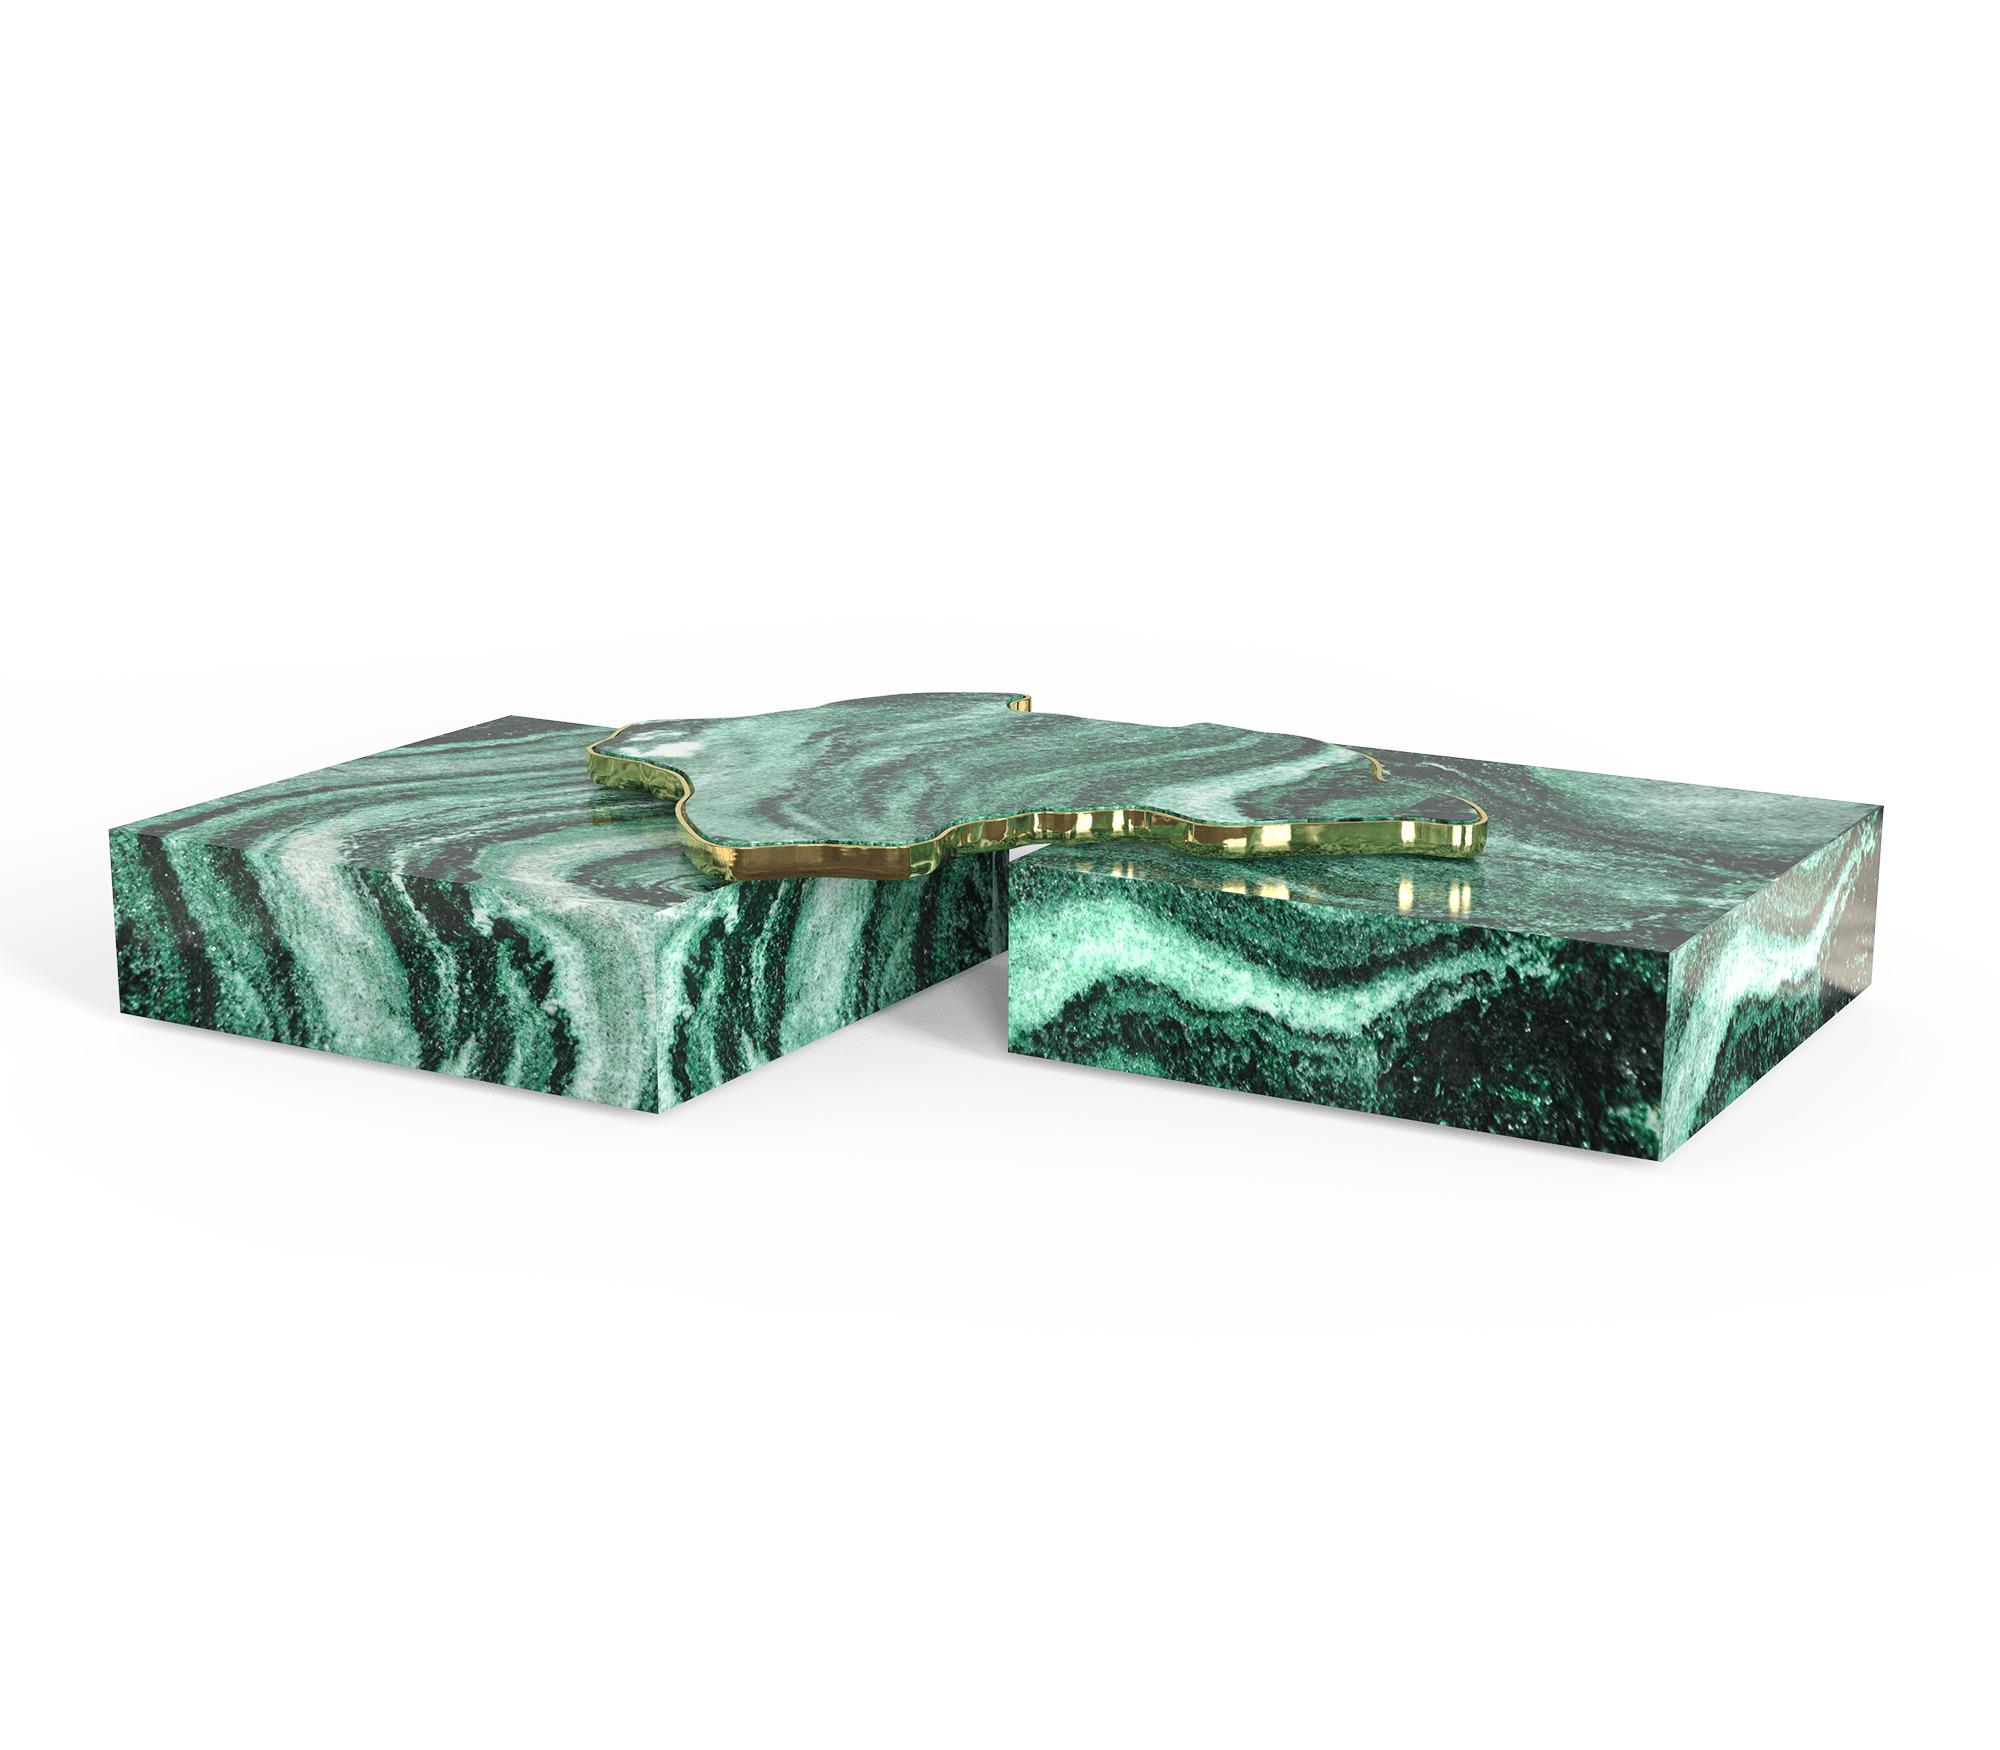 Mitteltisch aus grünem Marmor.

Ein zeitgenössischer Mitteltisch, der aus zwei quadratischen Modulen aus Marmor besteht, die durch ein organisches Marmoroberflächenelement auf der Oberseite verbunden sind, das von gegossenem Messing umhüllt